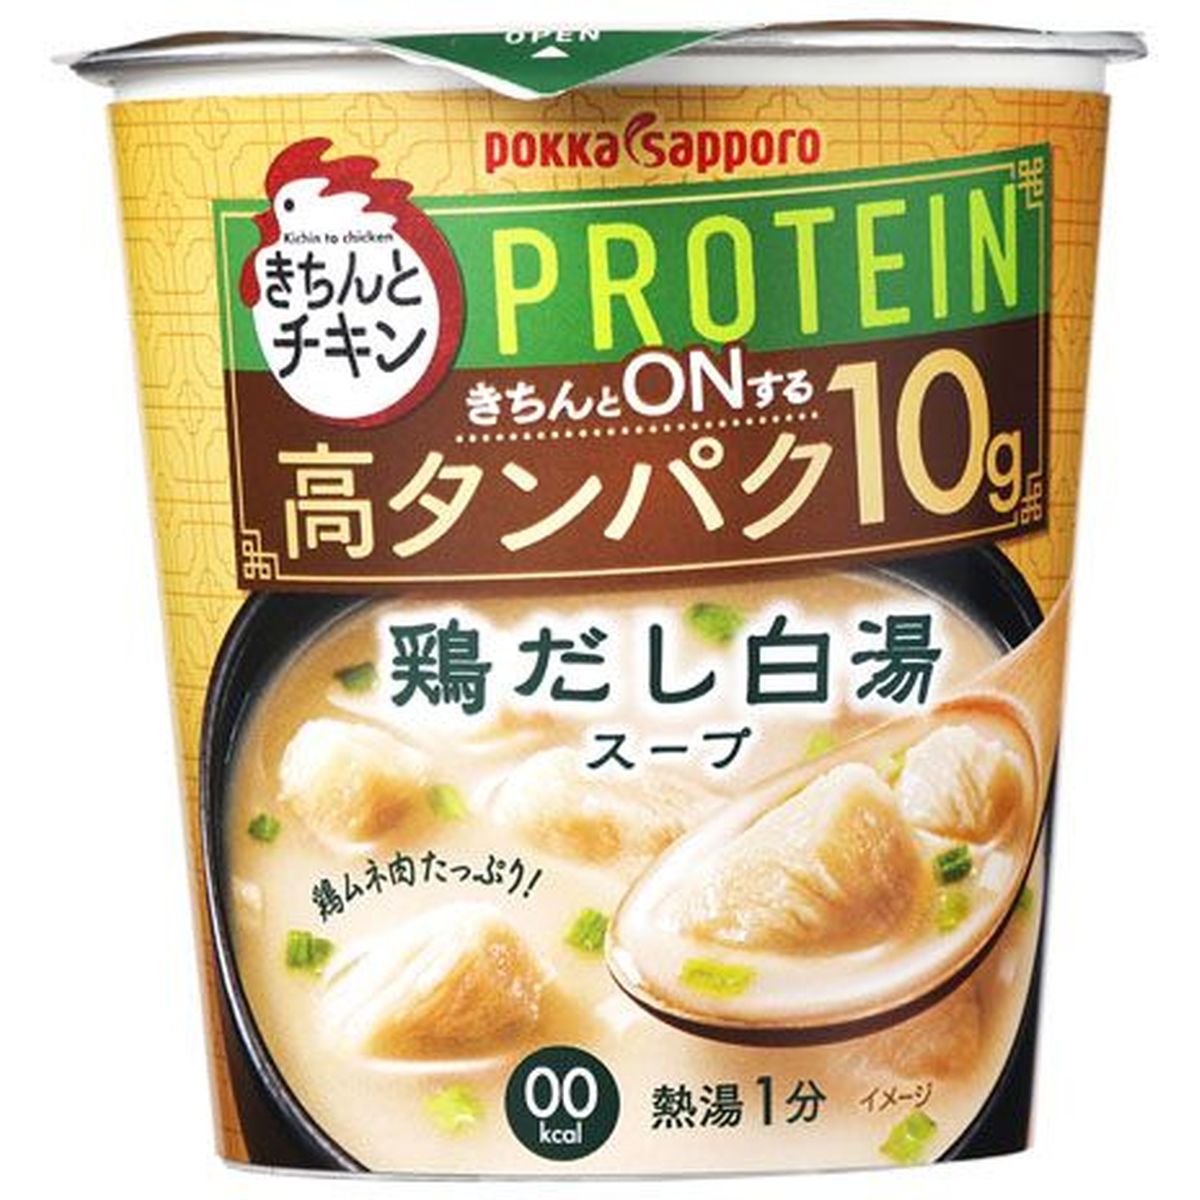 【6個入リ】ポッカサッポロ キチントチキン 鶏ダシ白湯スープ 22.2g